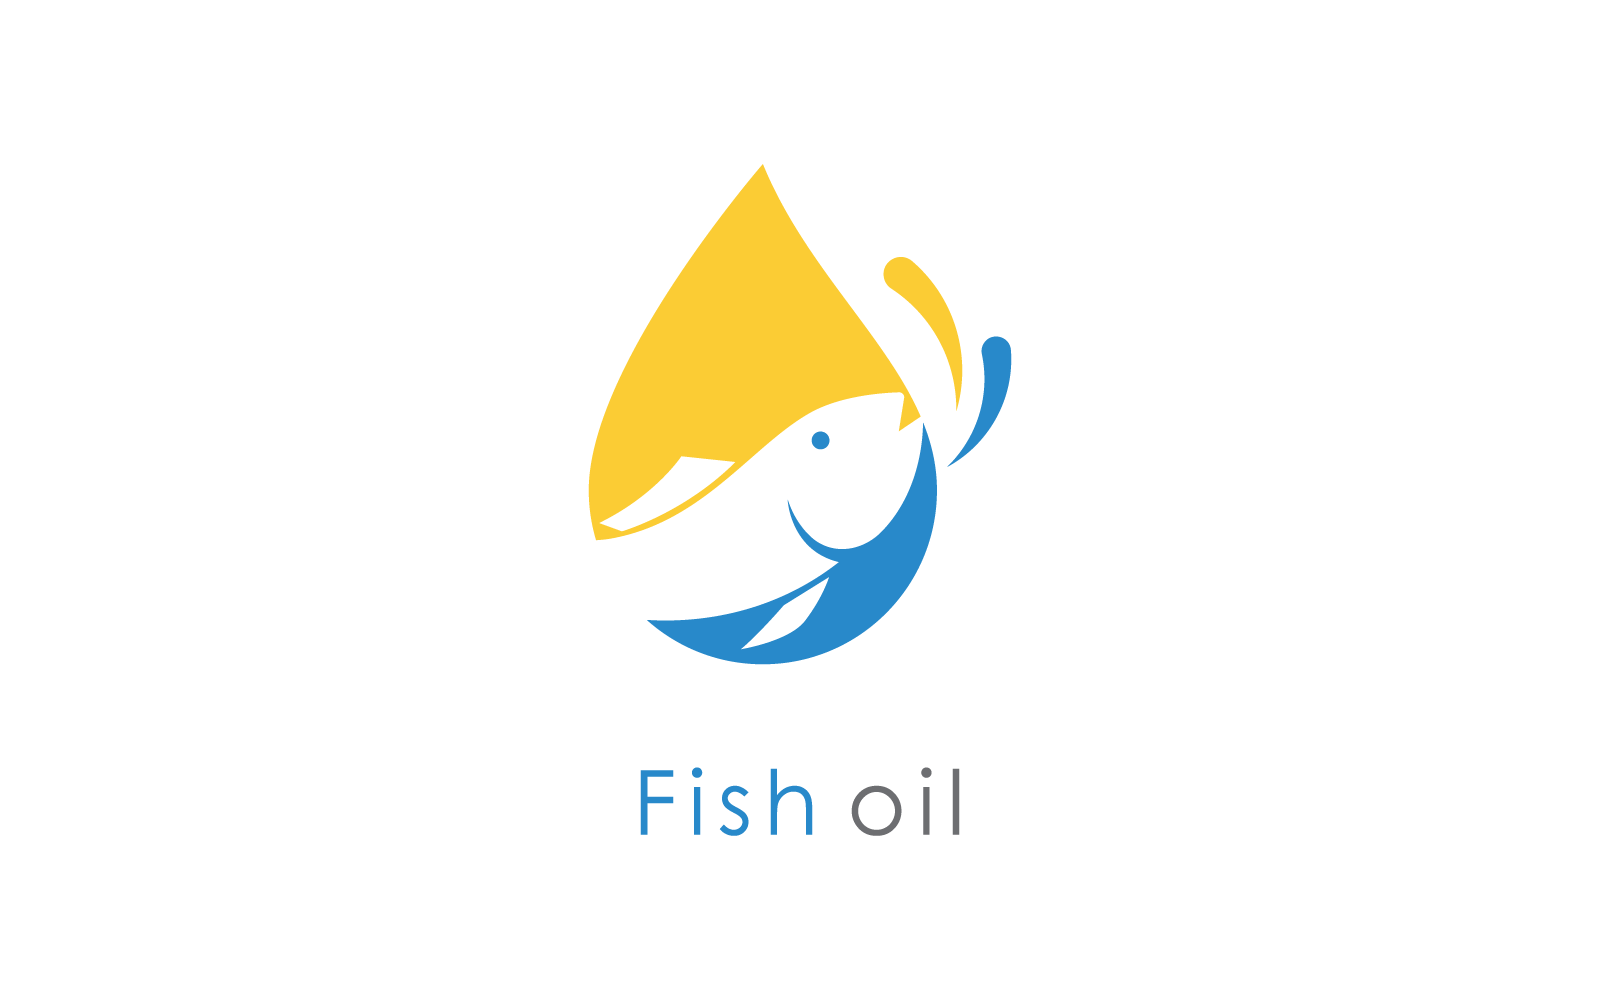 Fish oil logo design icon vector template